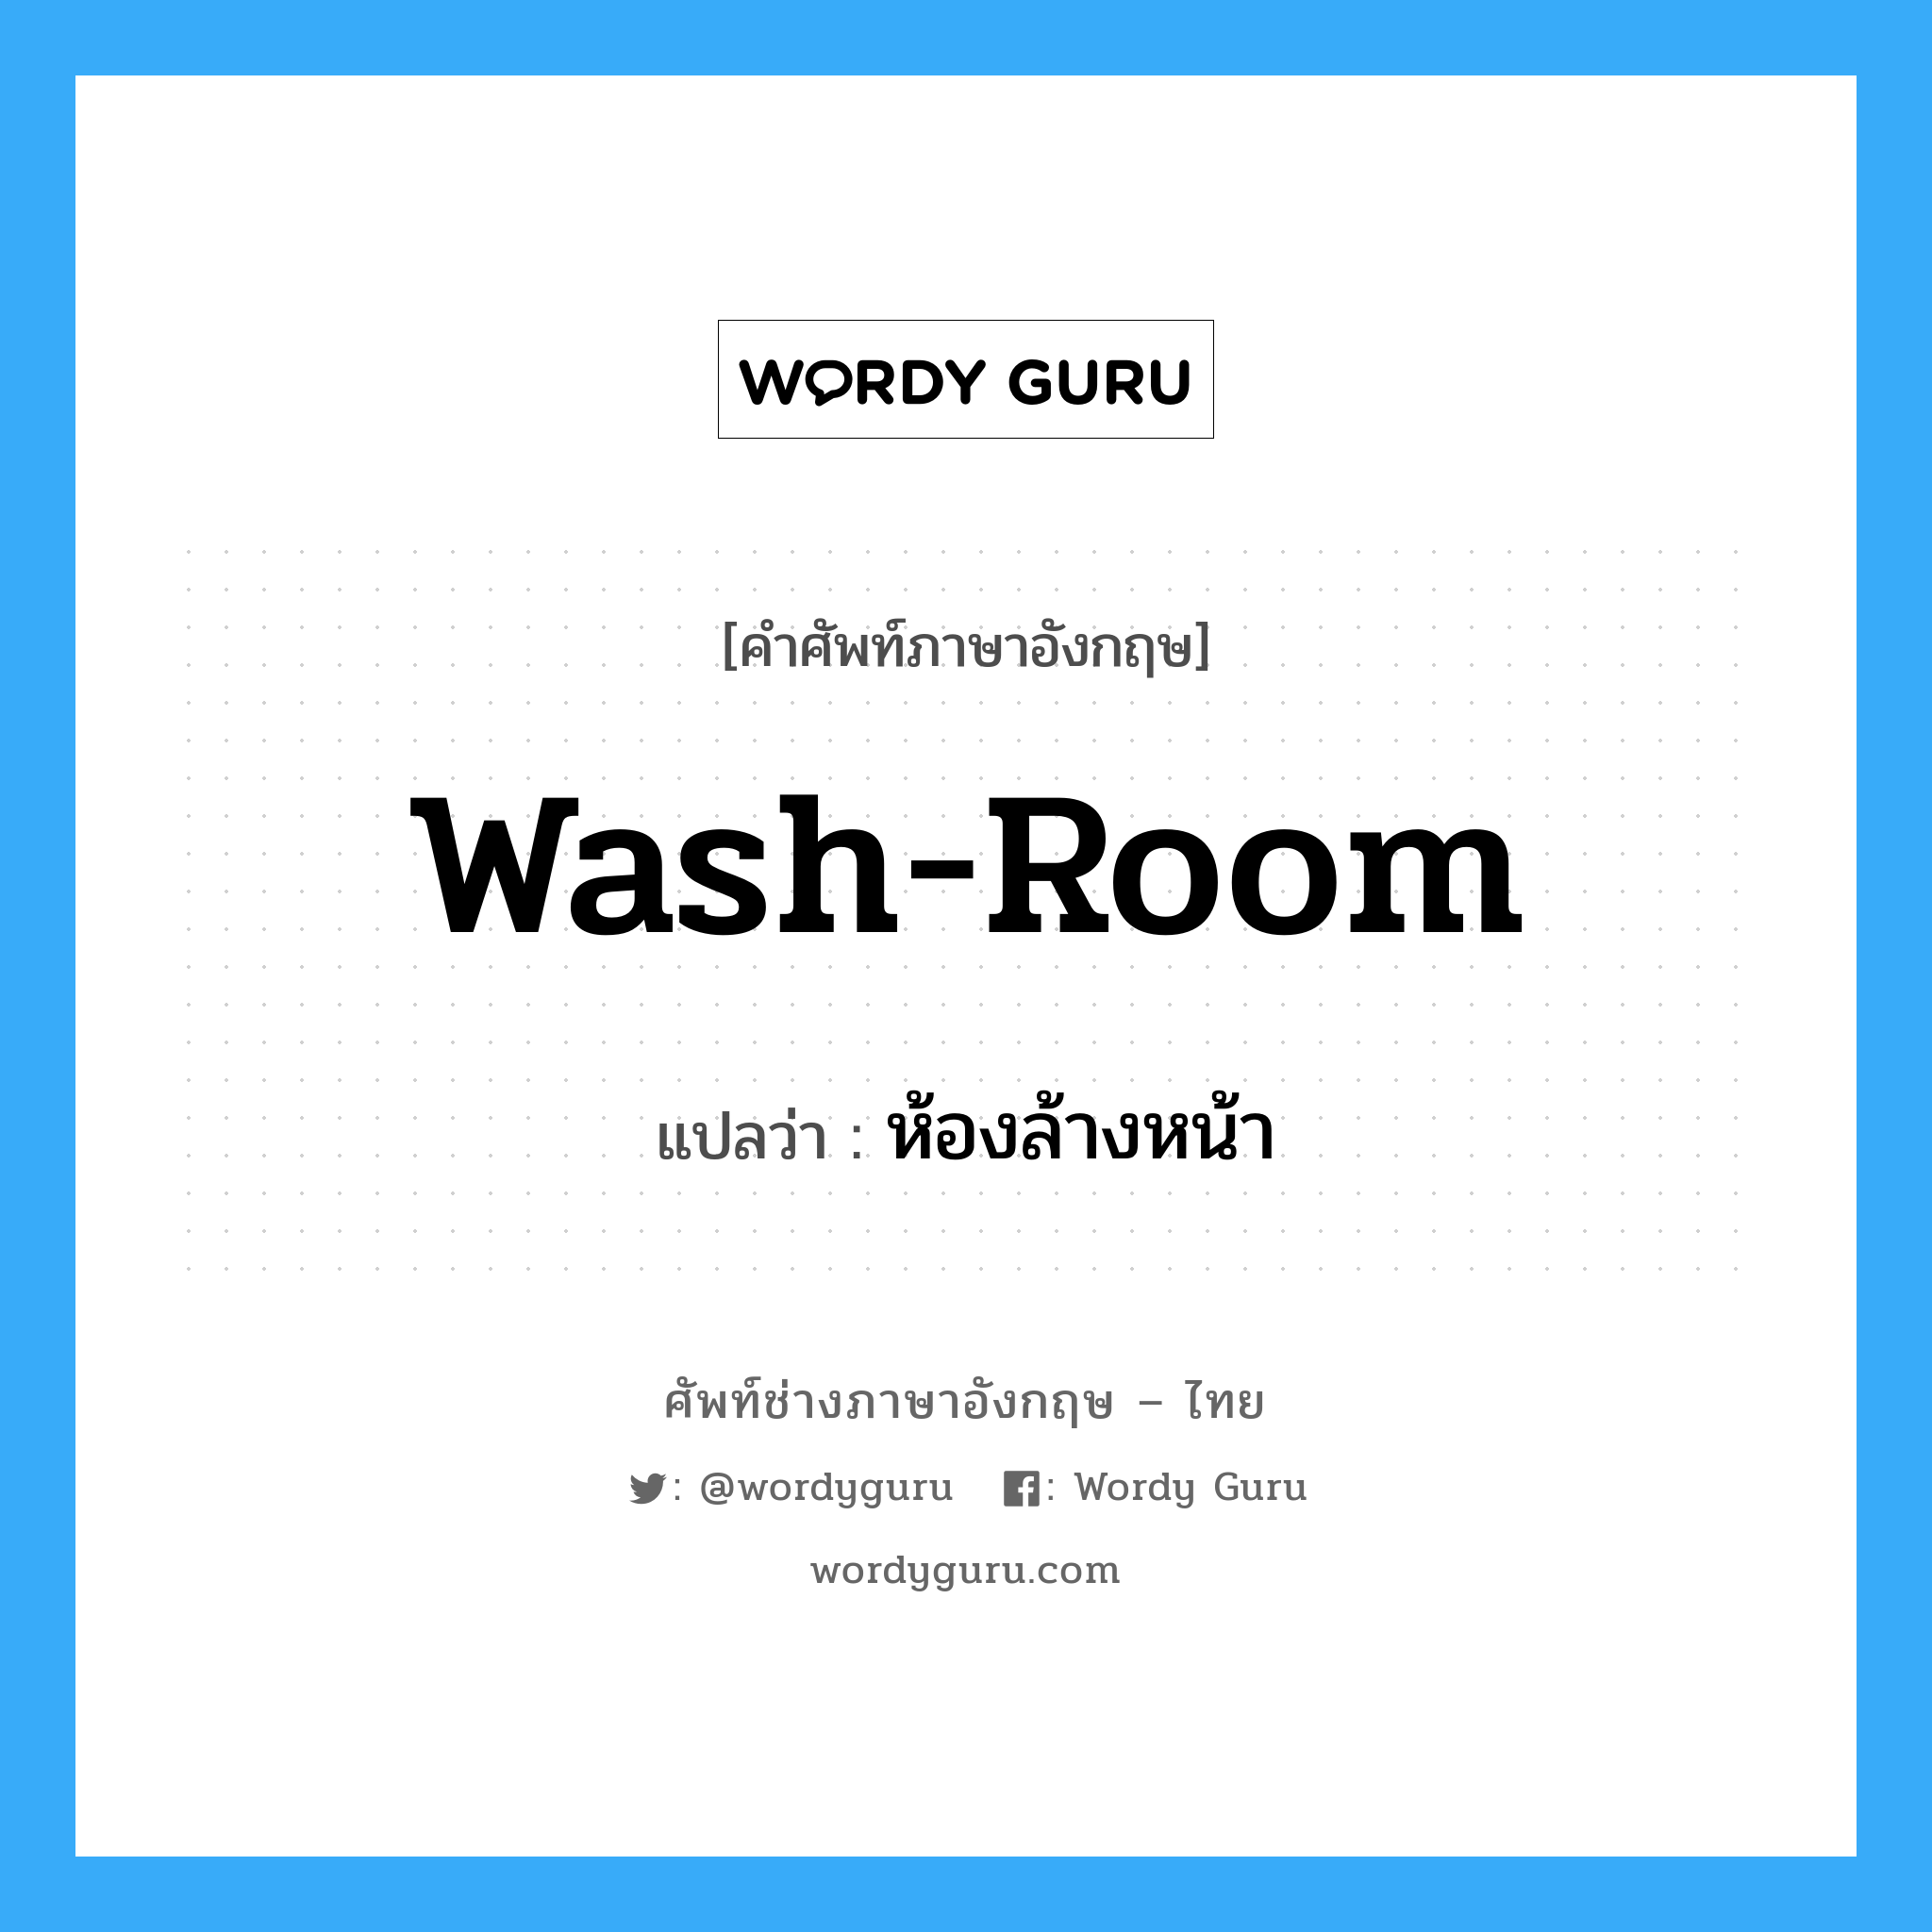 wash-room แปลว่า?, คำศัพท์ช่างภาษาอังกฤษ - ไทย wash-room คำศัพท์ภาษาอังกฤษ wash-room แปลว่า ห้องล้างหน้า